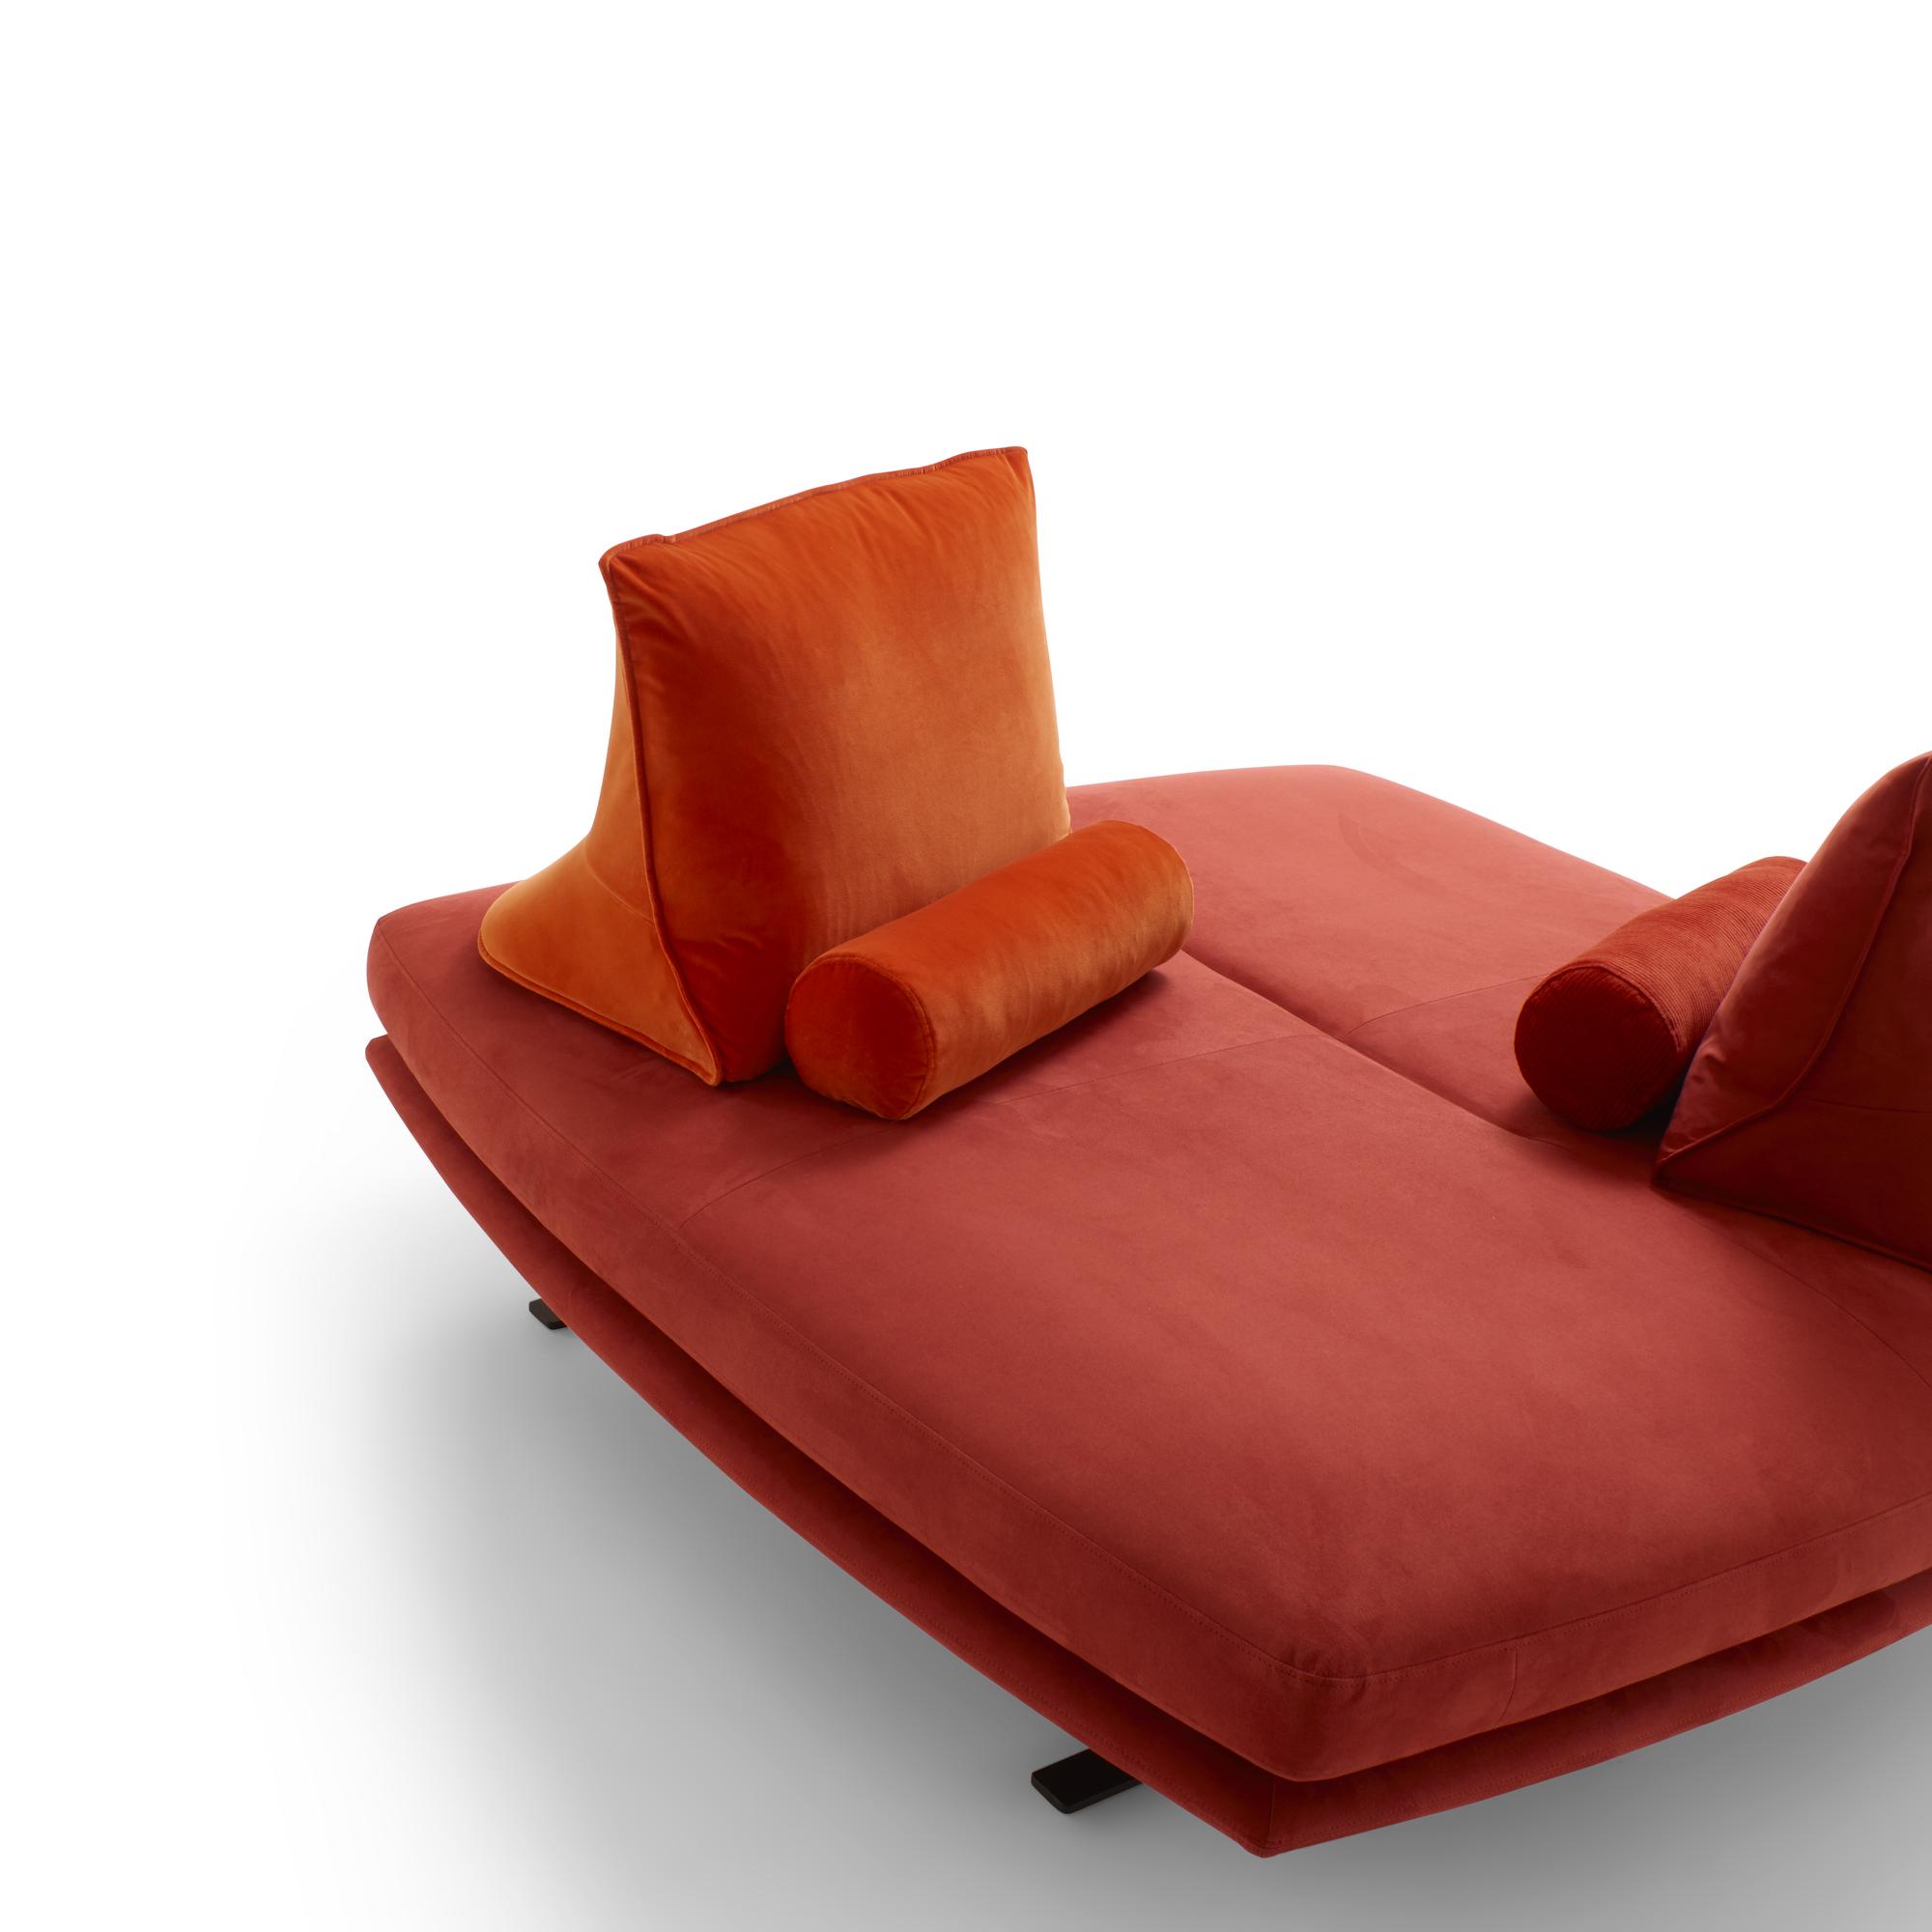 PRADO, Sofas from Designer : Christian Werner | Ligne Roset Official Site